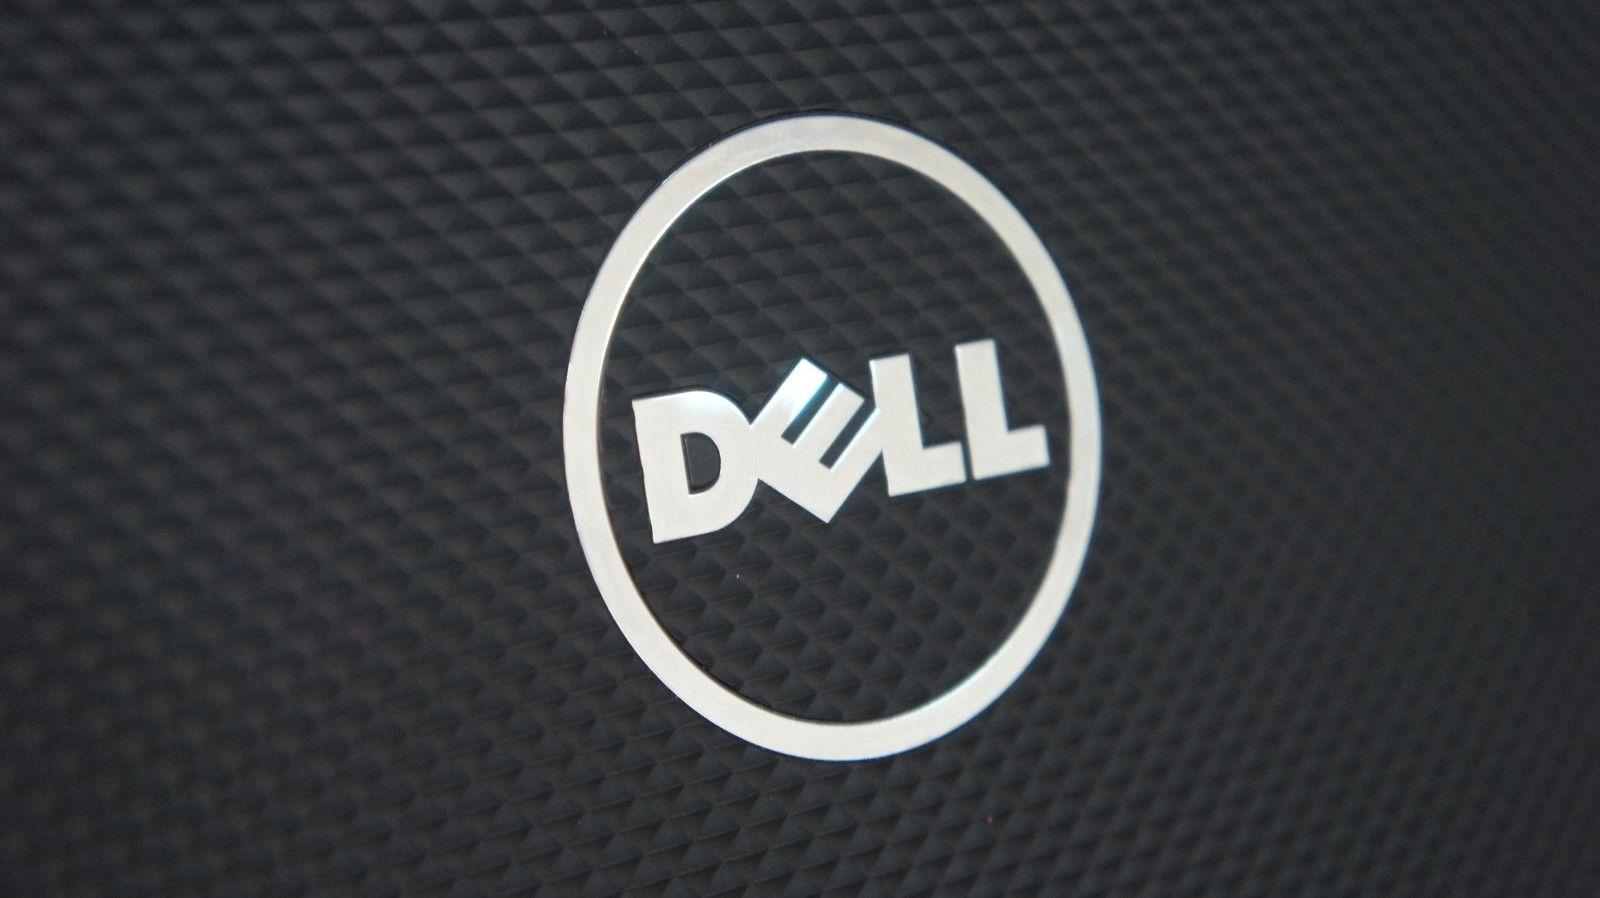 EMC Corporation Logo - Dell to acquire EMC Corporation in massive $67 billion deal ...